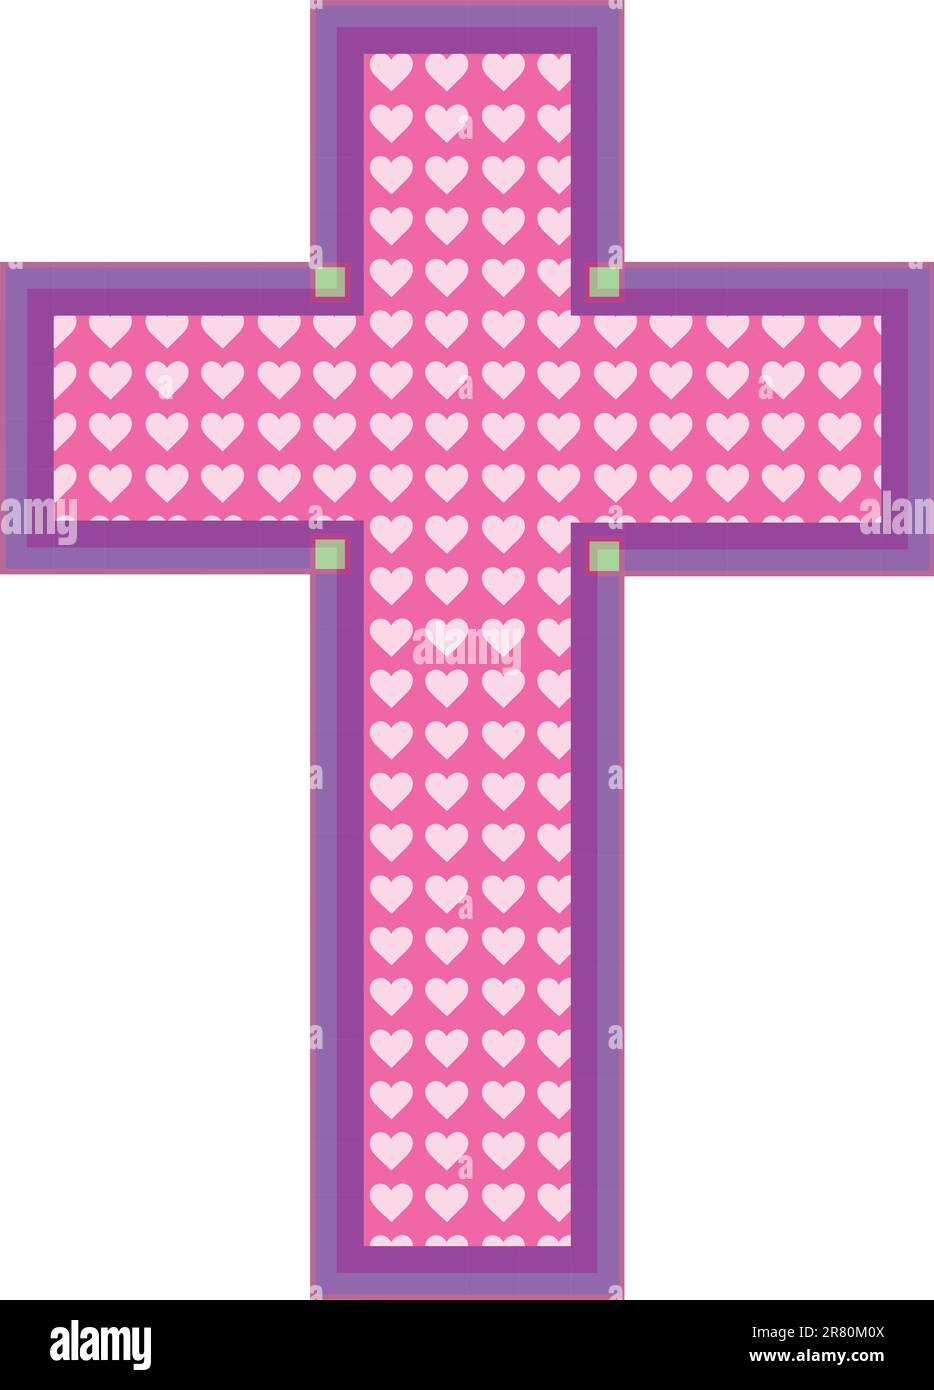 Una croce di colore rosa presenta ritagli al cuore in una tonalità più chiara di rosa, con un bordo color malva e viola. Illustrazione Vettoriale